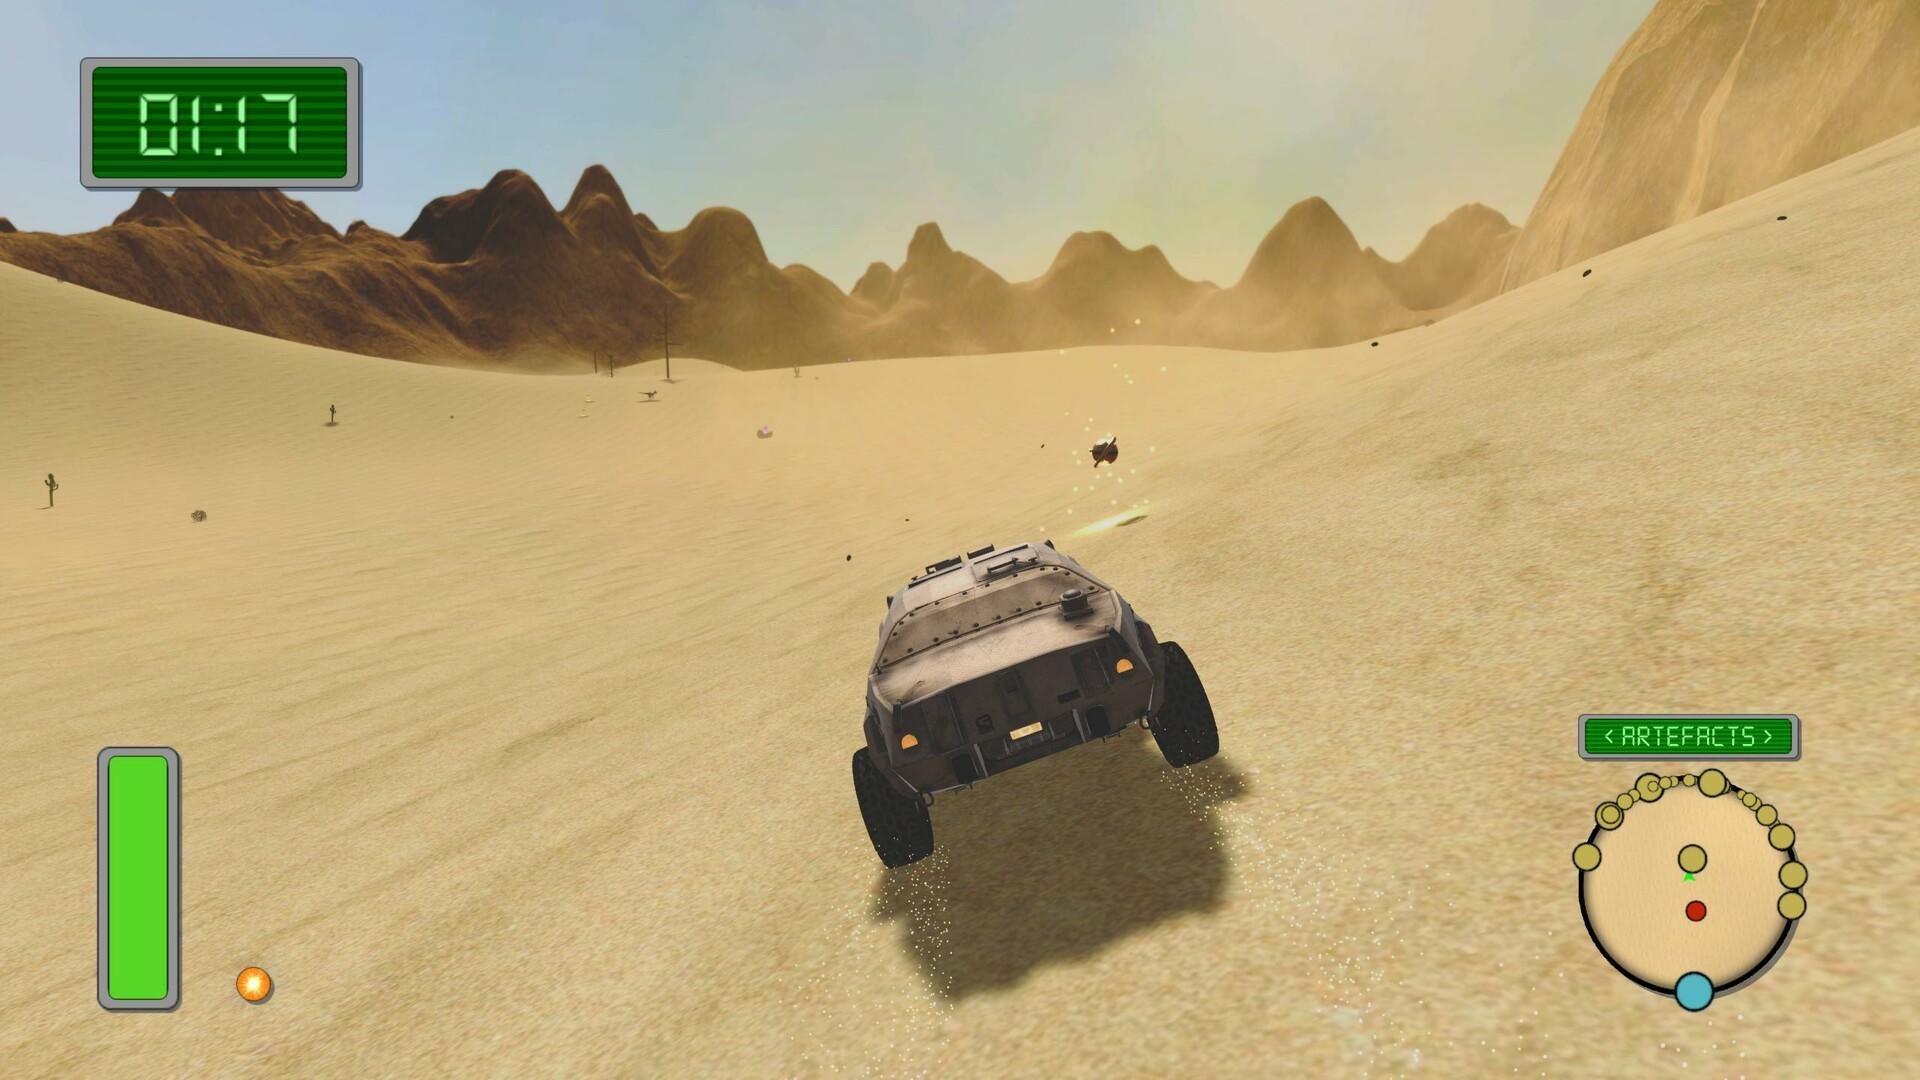 Screenshot of Dune of the Desert